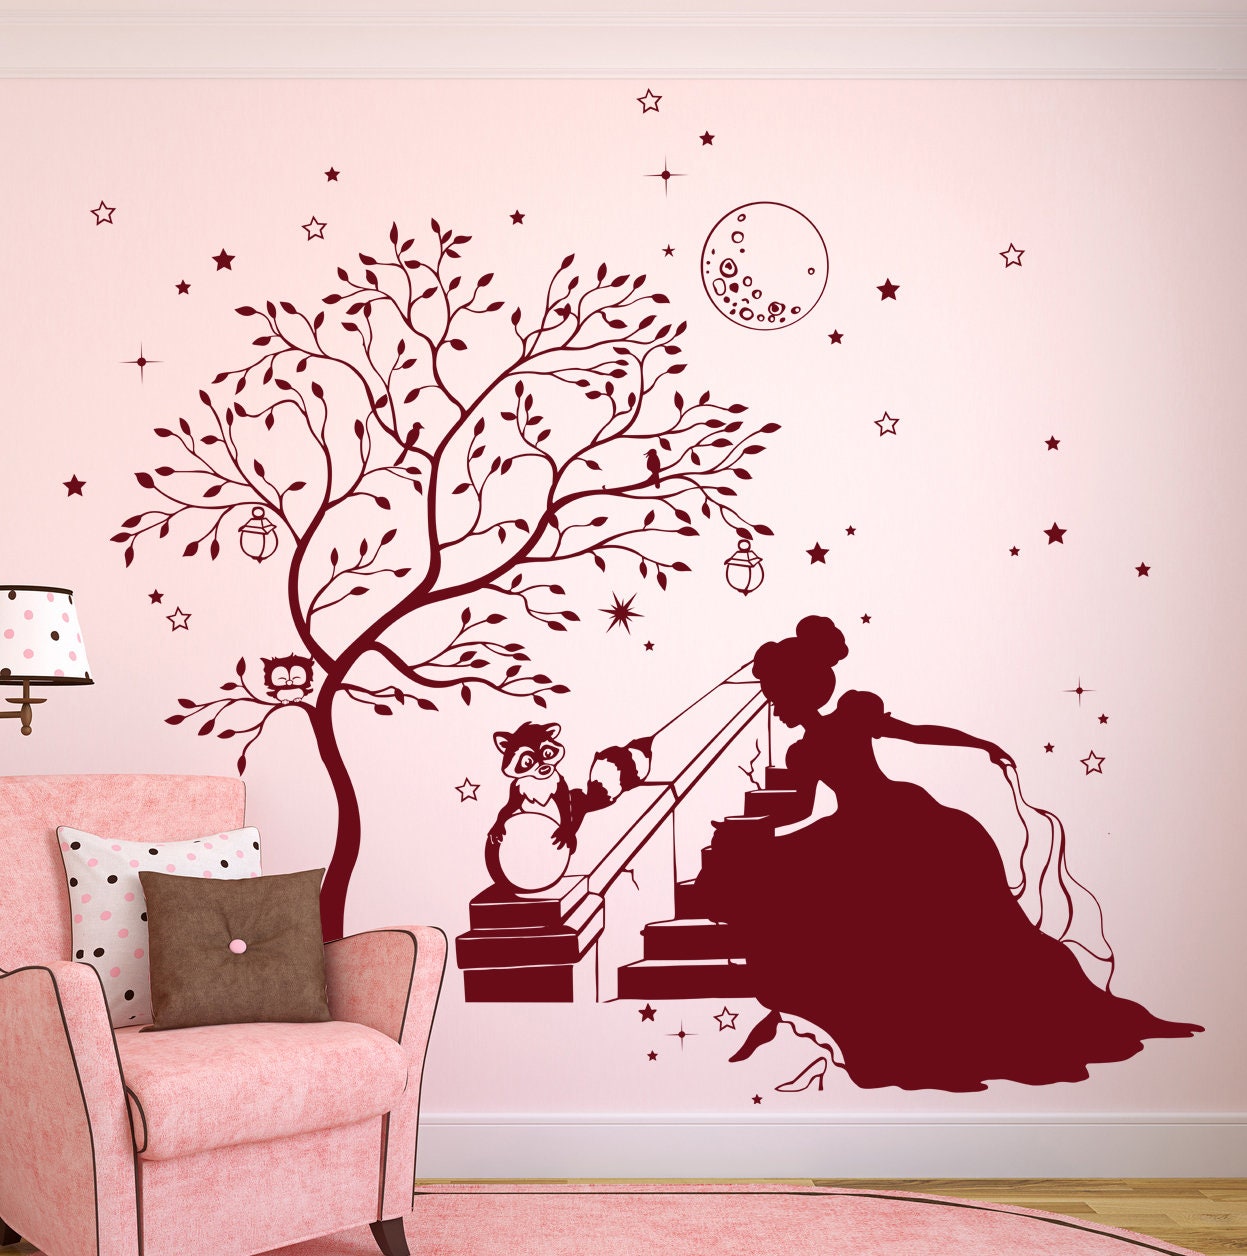 Fairytale room decor